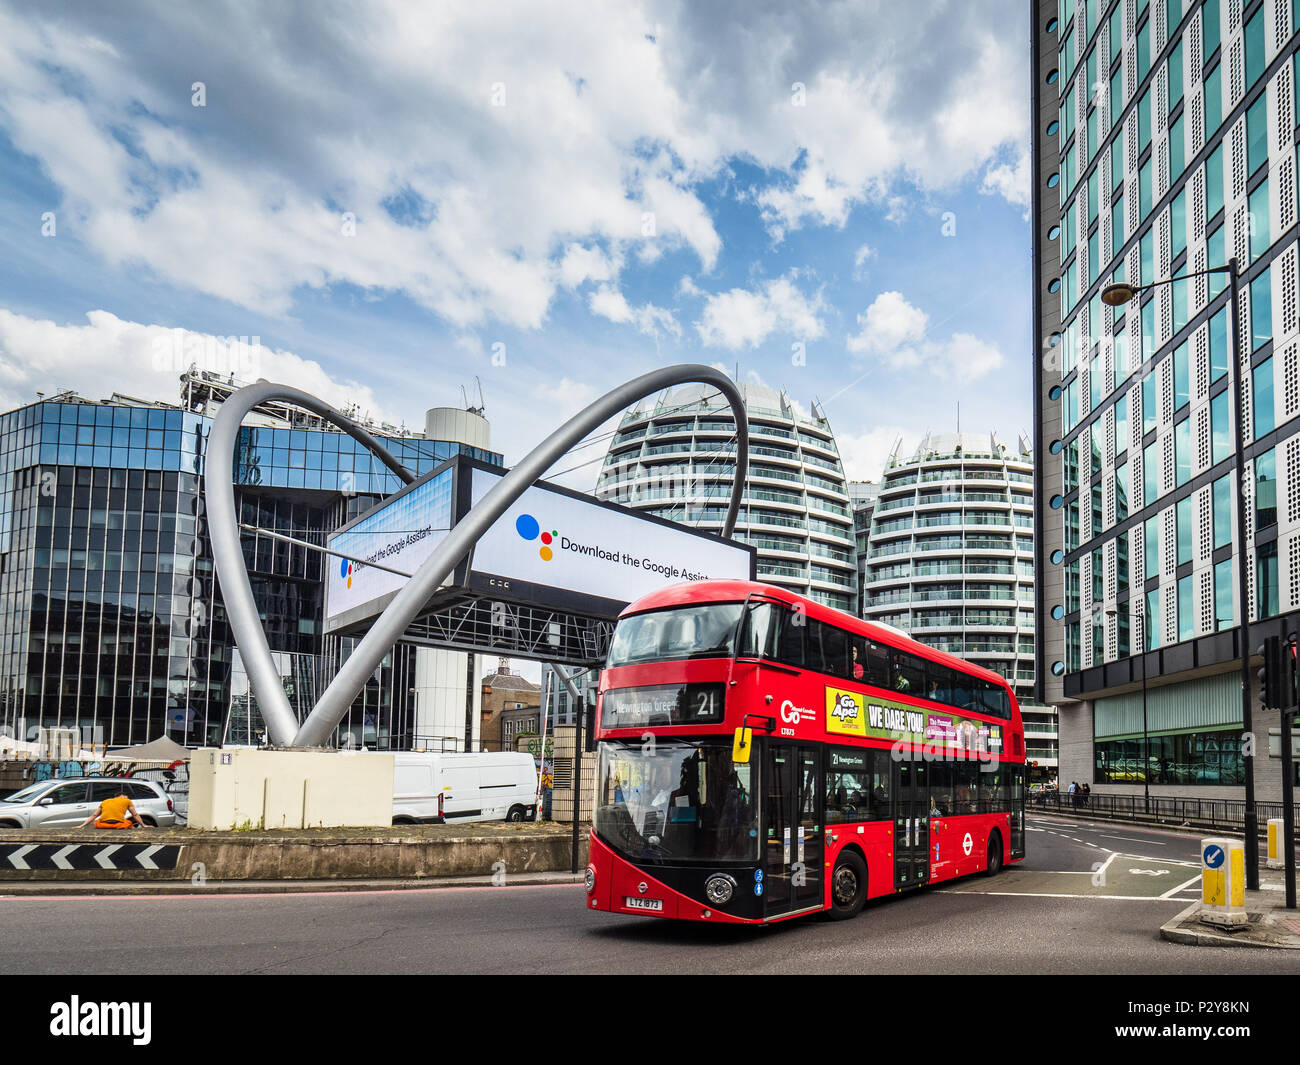 Kreisverkehr aus Silizium oder Kreisverkehr in der Old Street - Londons Technologiezentrum im Shoreditchbereich im Zentrum Londons Stockfoto